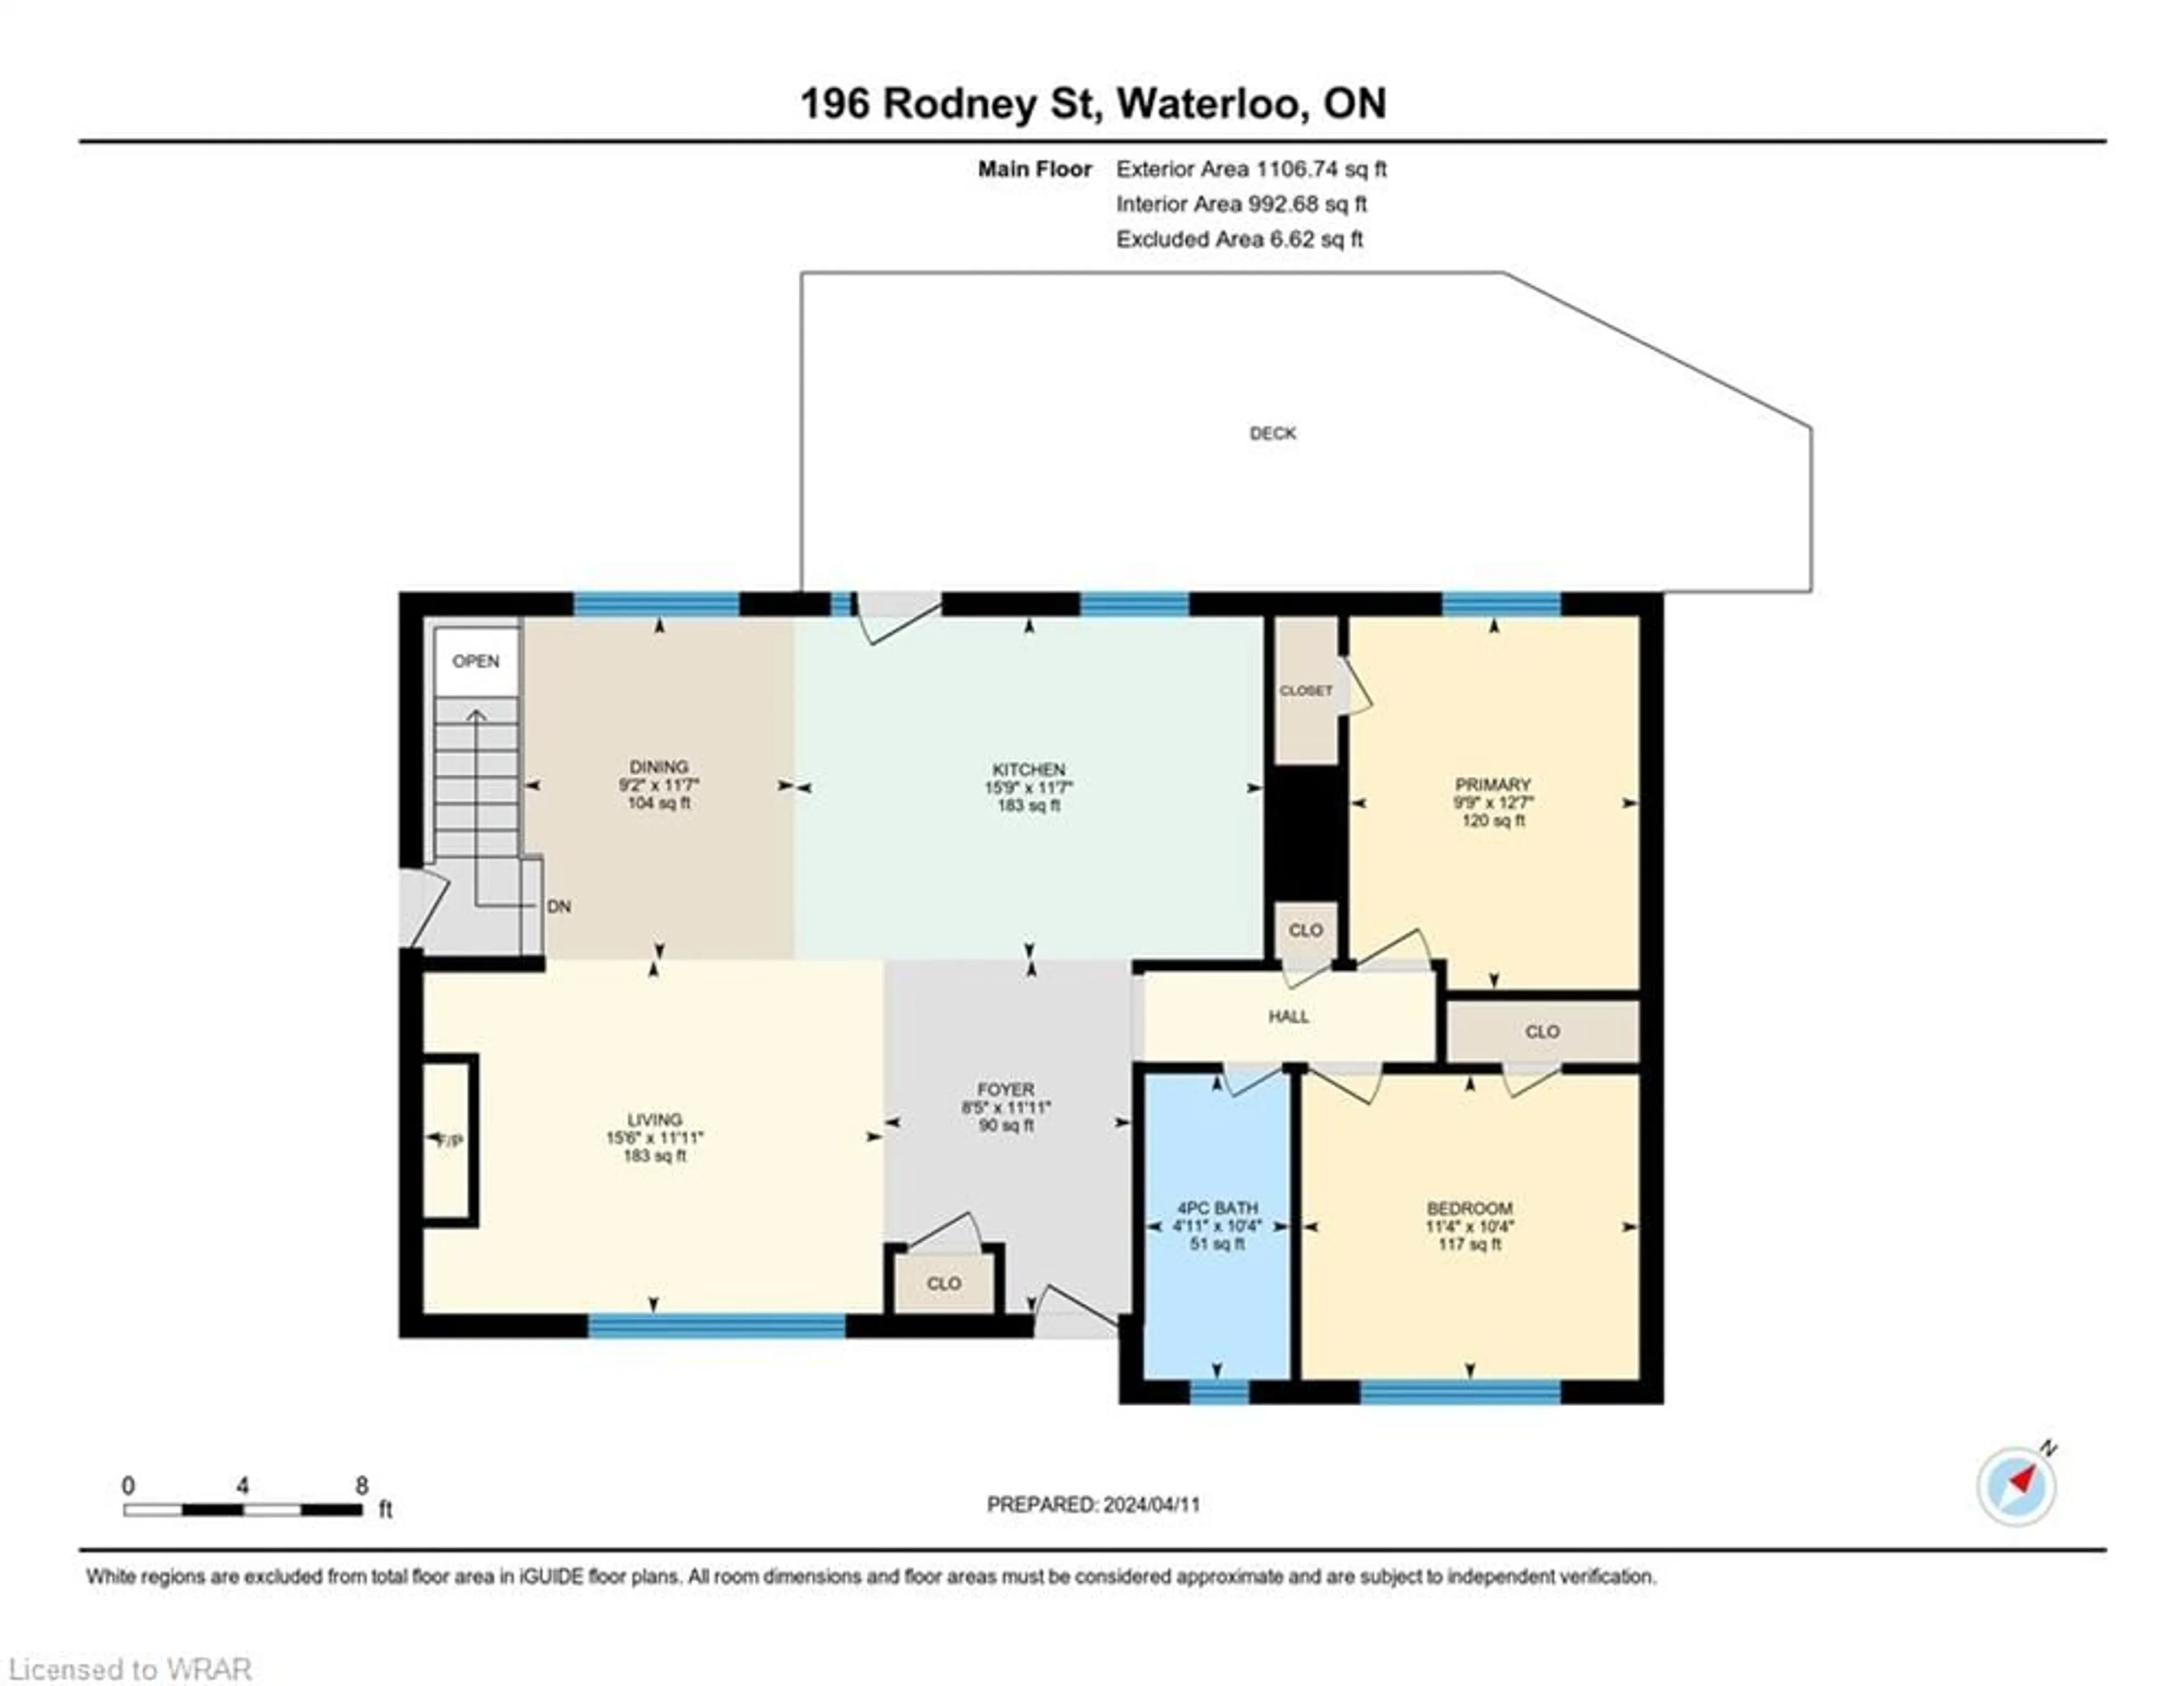 Floor plan for 196 Rodney St, Waterloo Ontario N2J 1G5